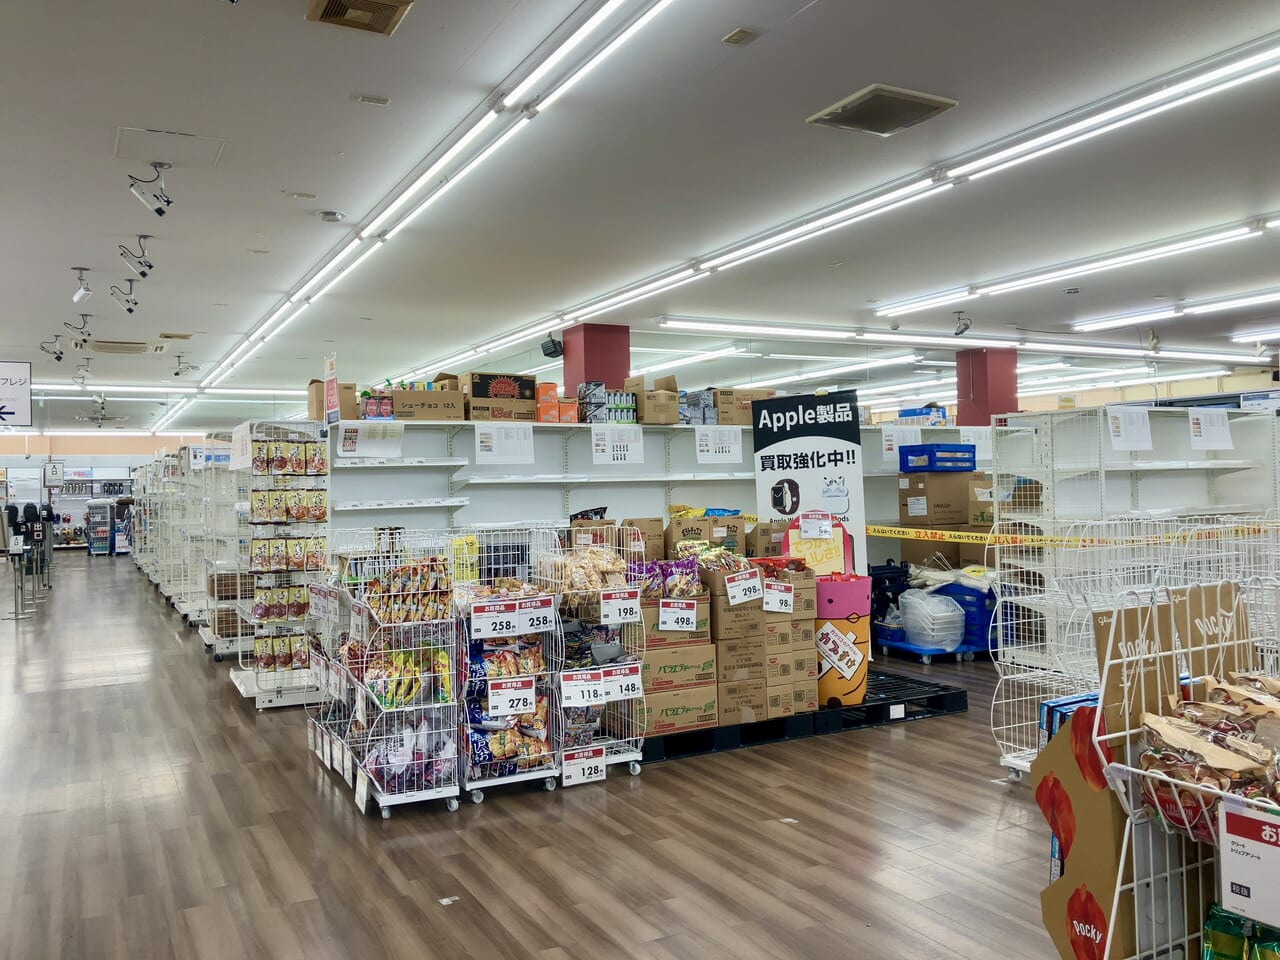 「ゲオ札幌環状通東店」が改装工事中。どんな店舗になるのでしょうか。改装中の店内をのぞいてみました。